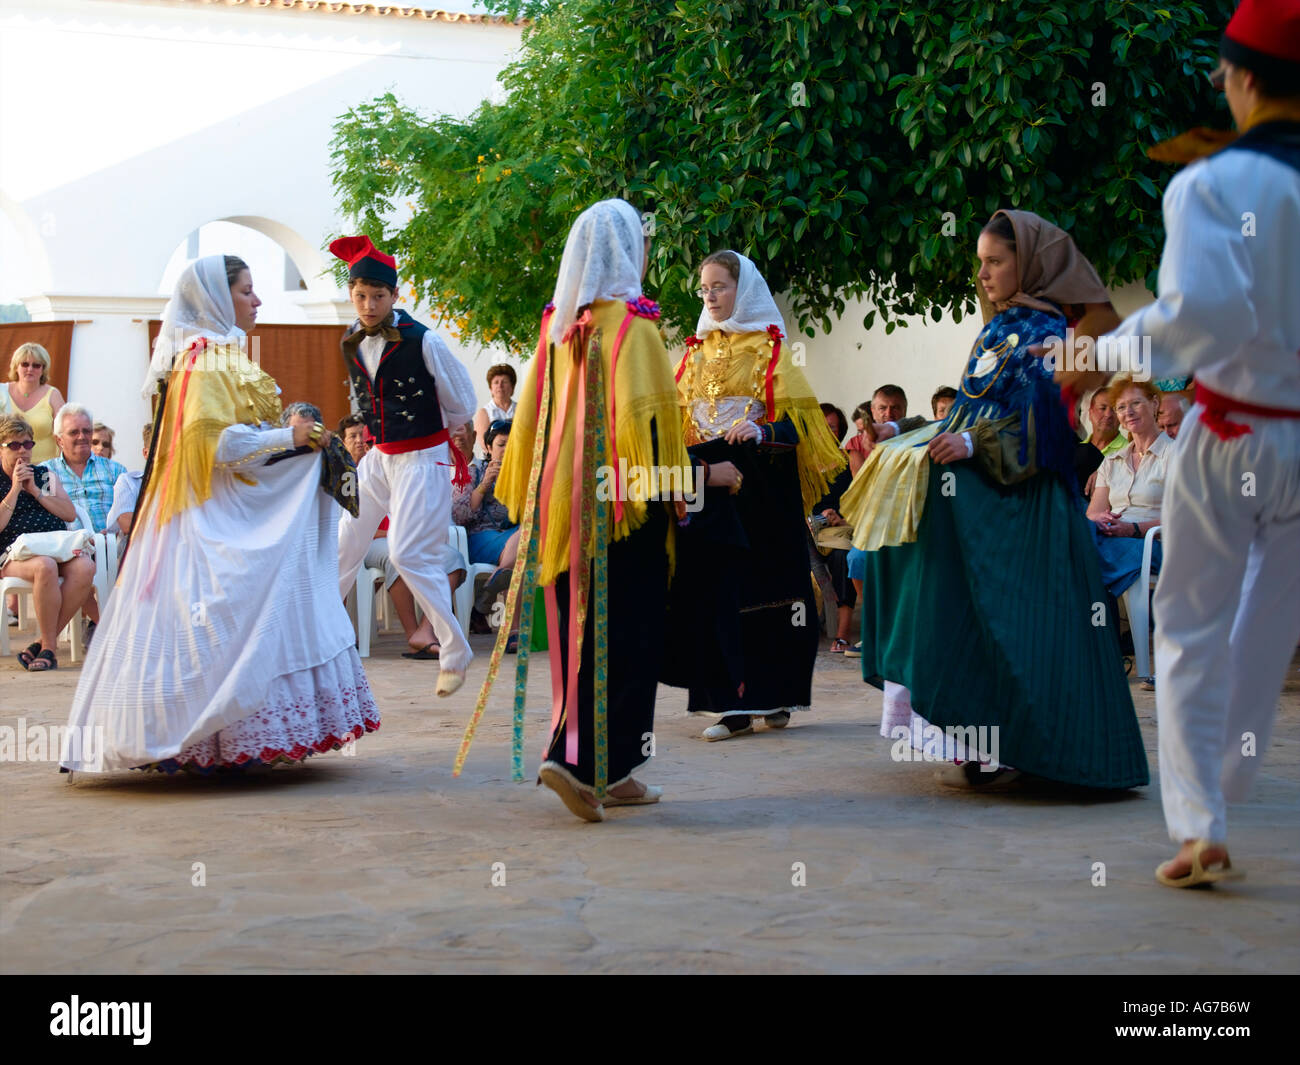 Bailes folclóricos tradicionales y vestuario, Ibiza Fotografía de stock -  Alamy